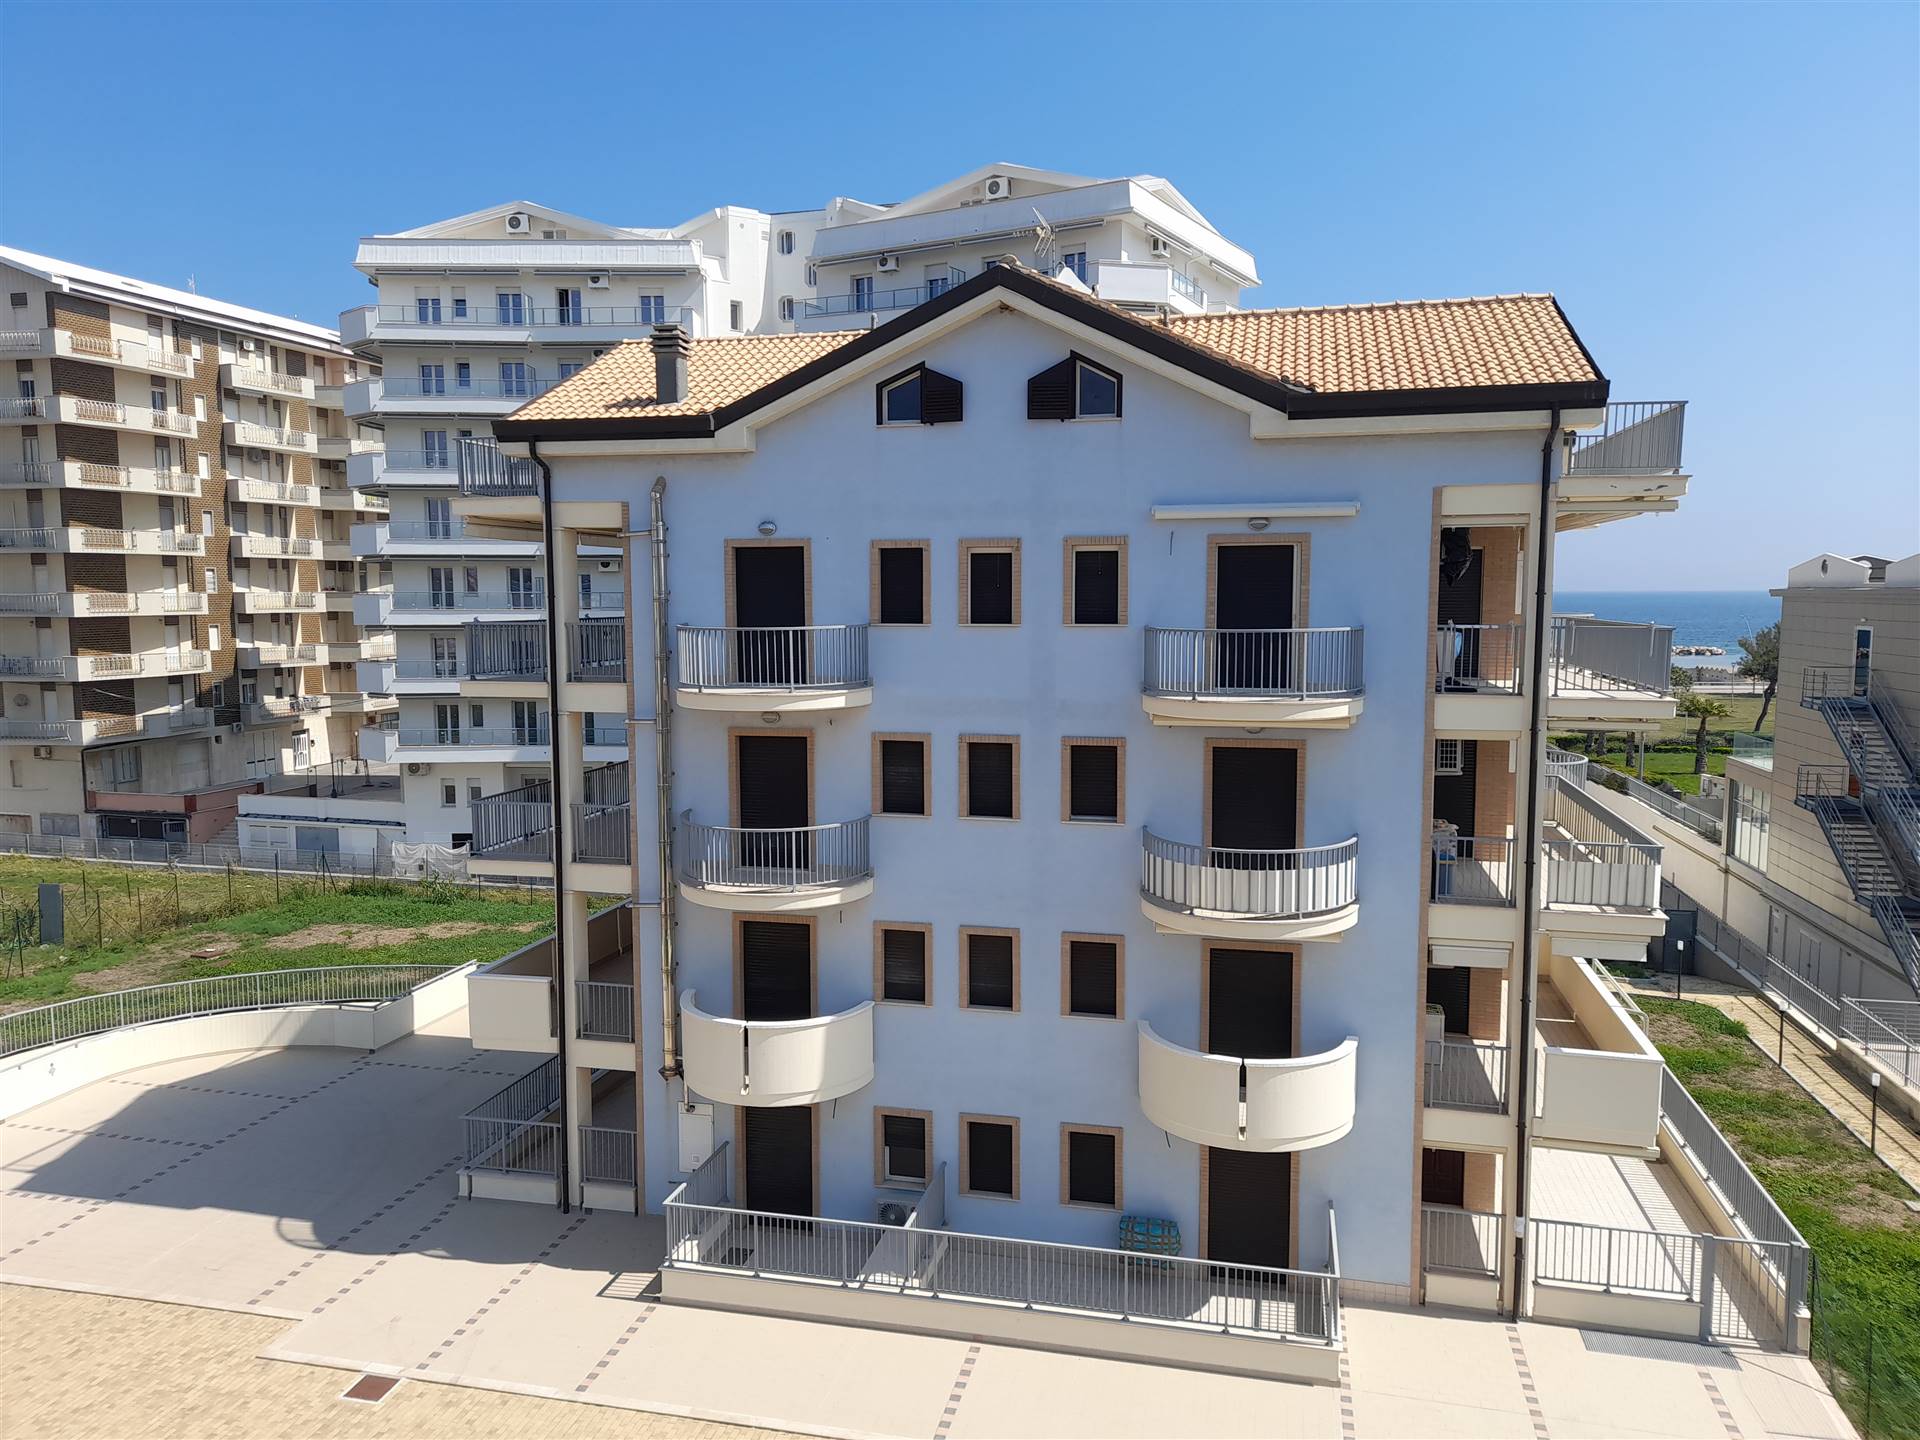 V - 220 L'agenzia immobiliare Aliservice propone in vendita a San Salvo marina, all'interno di un residence di nuova costruzione, n° 02 appartamenti 